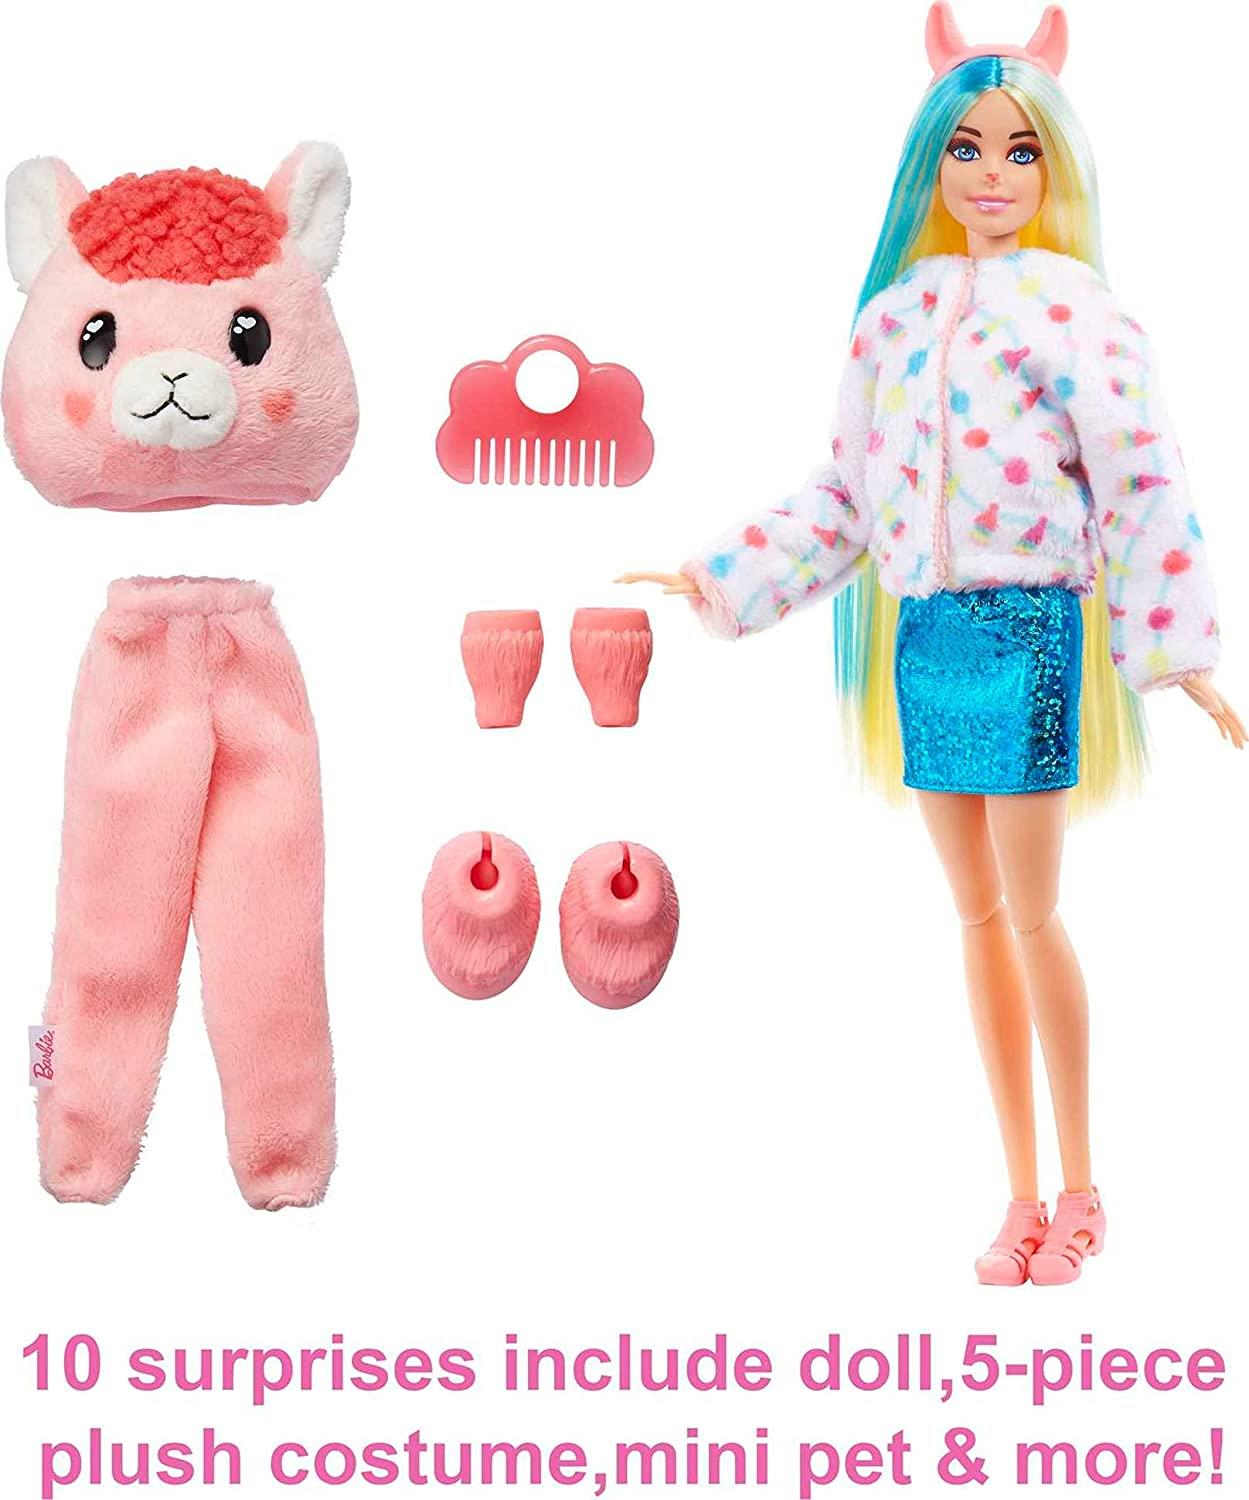 Barbie Barbie Doll Barbie Cutie Reveal Doll with Llama Plush